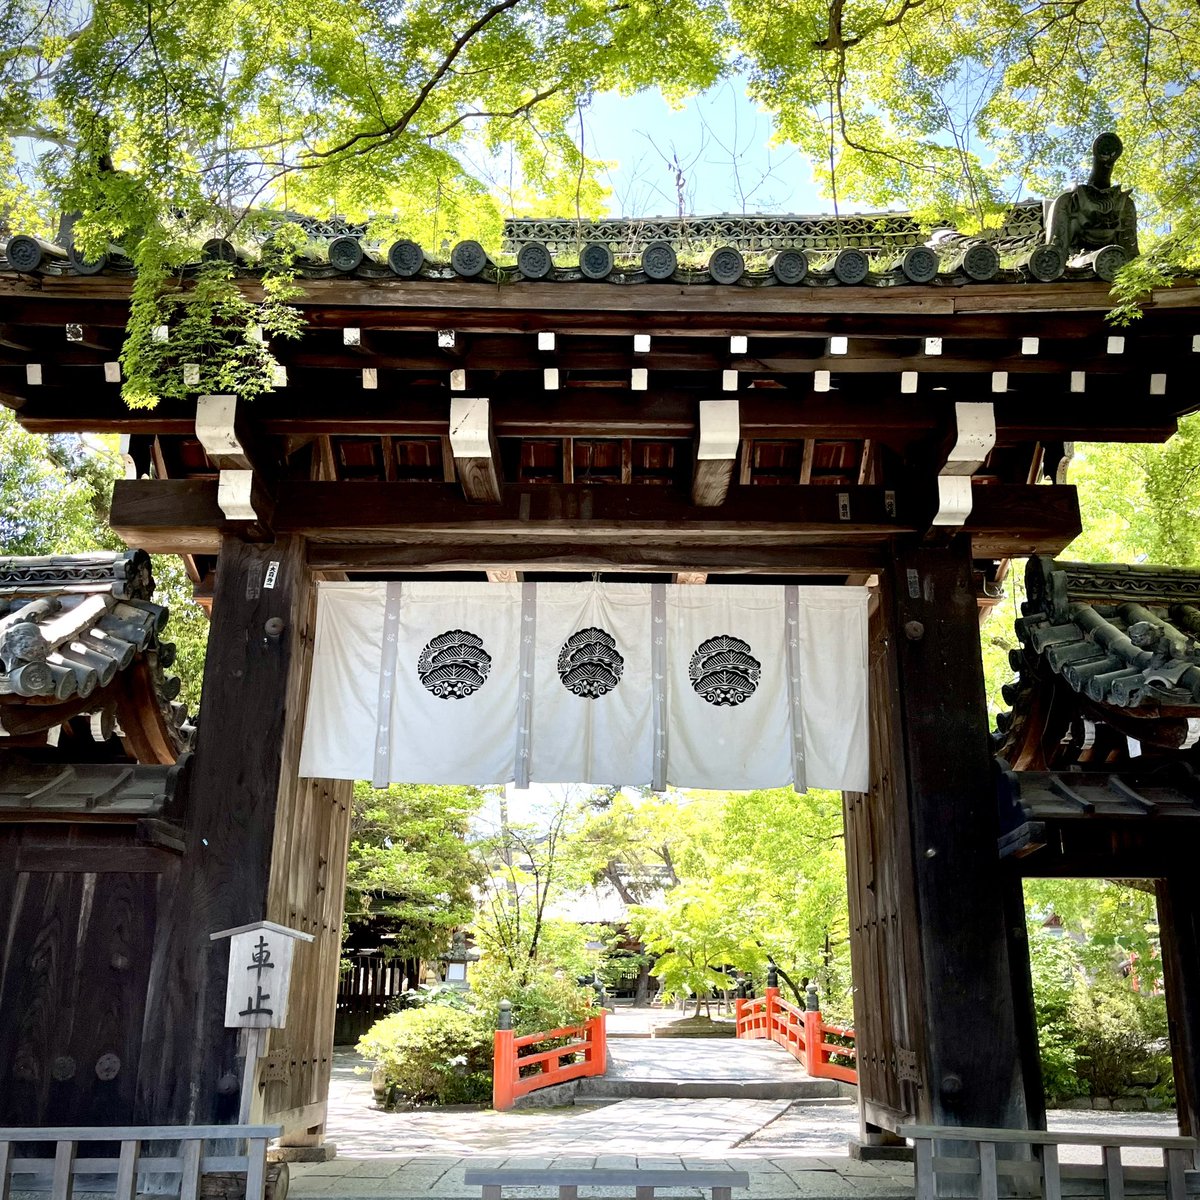 青葉の桜餅
紫野・今宮神社還幸祭前日にその年に芽吹いた葉で作ります。
若葉の活力をいただき、祭りを寿ぐお菓子です。

#今宮祭 #京菓子 #五月晴の京都